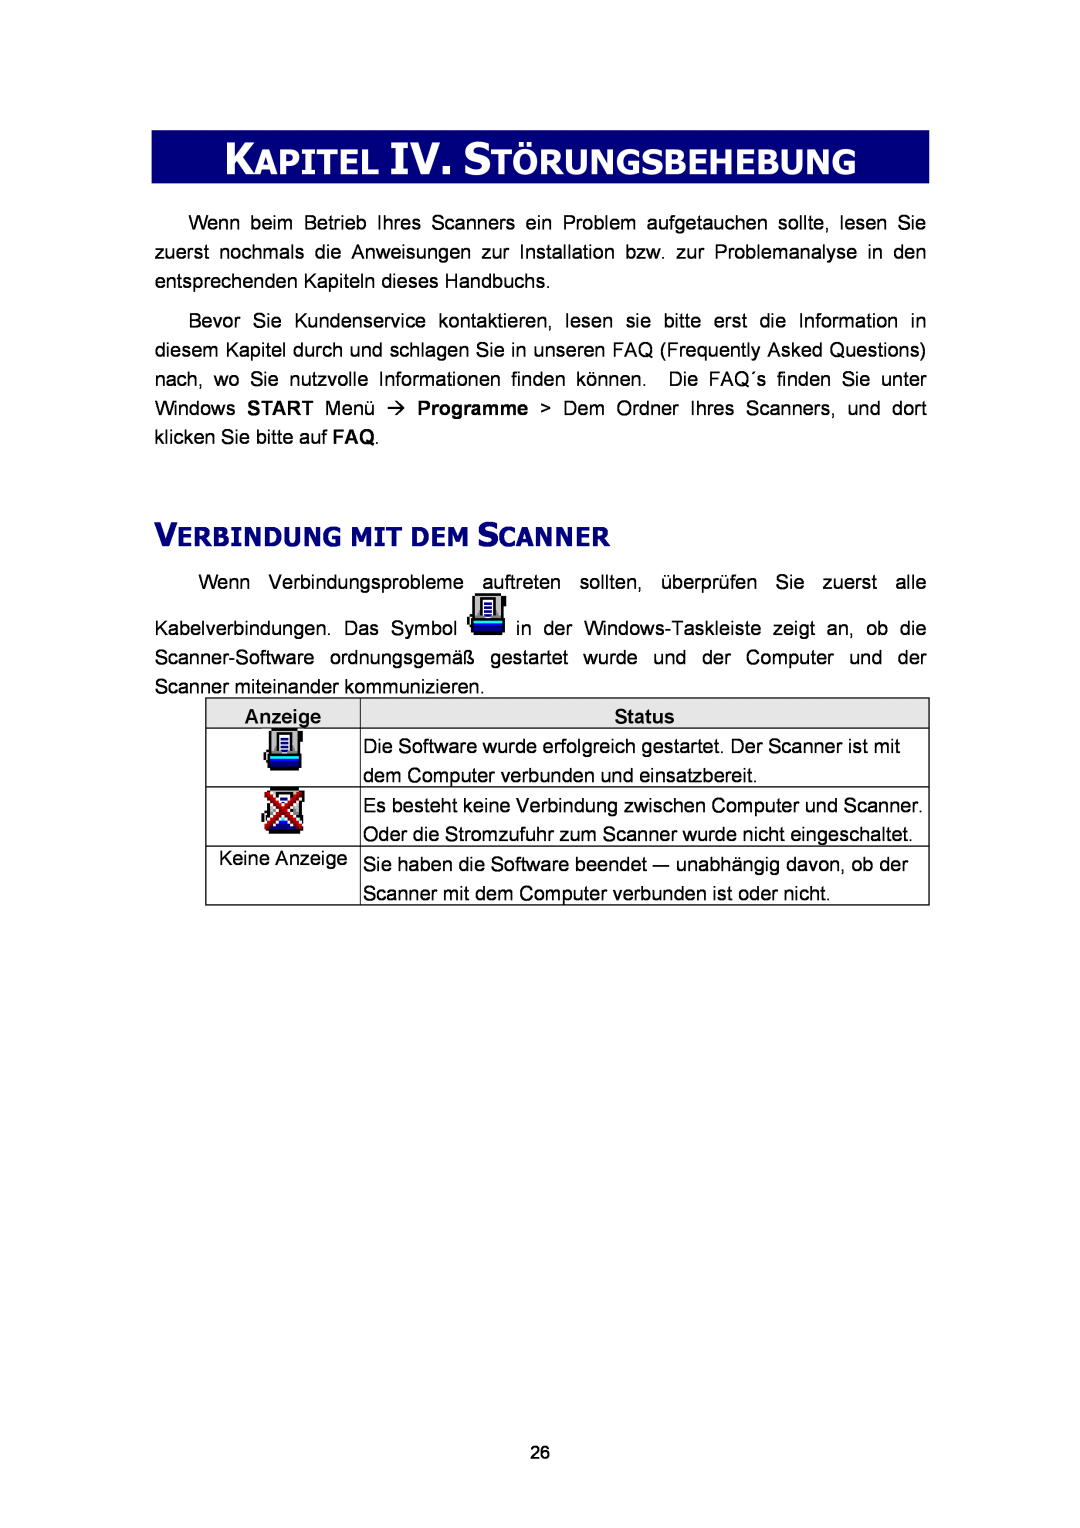 Plustek A360, Scanner-Benutzerhandbuch manual Kapitel Iv. Störungsbehebung, Verbindung Mit Dem Scanner, Anzeige, Status 